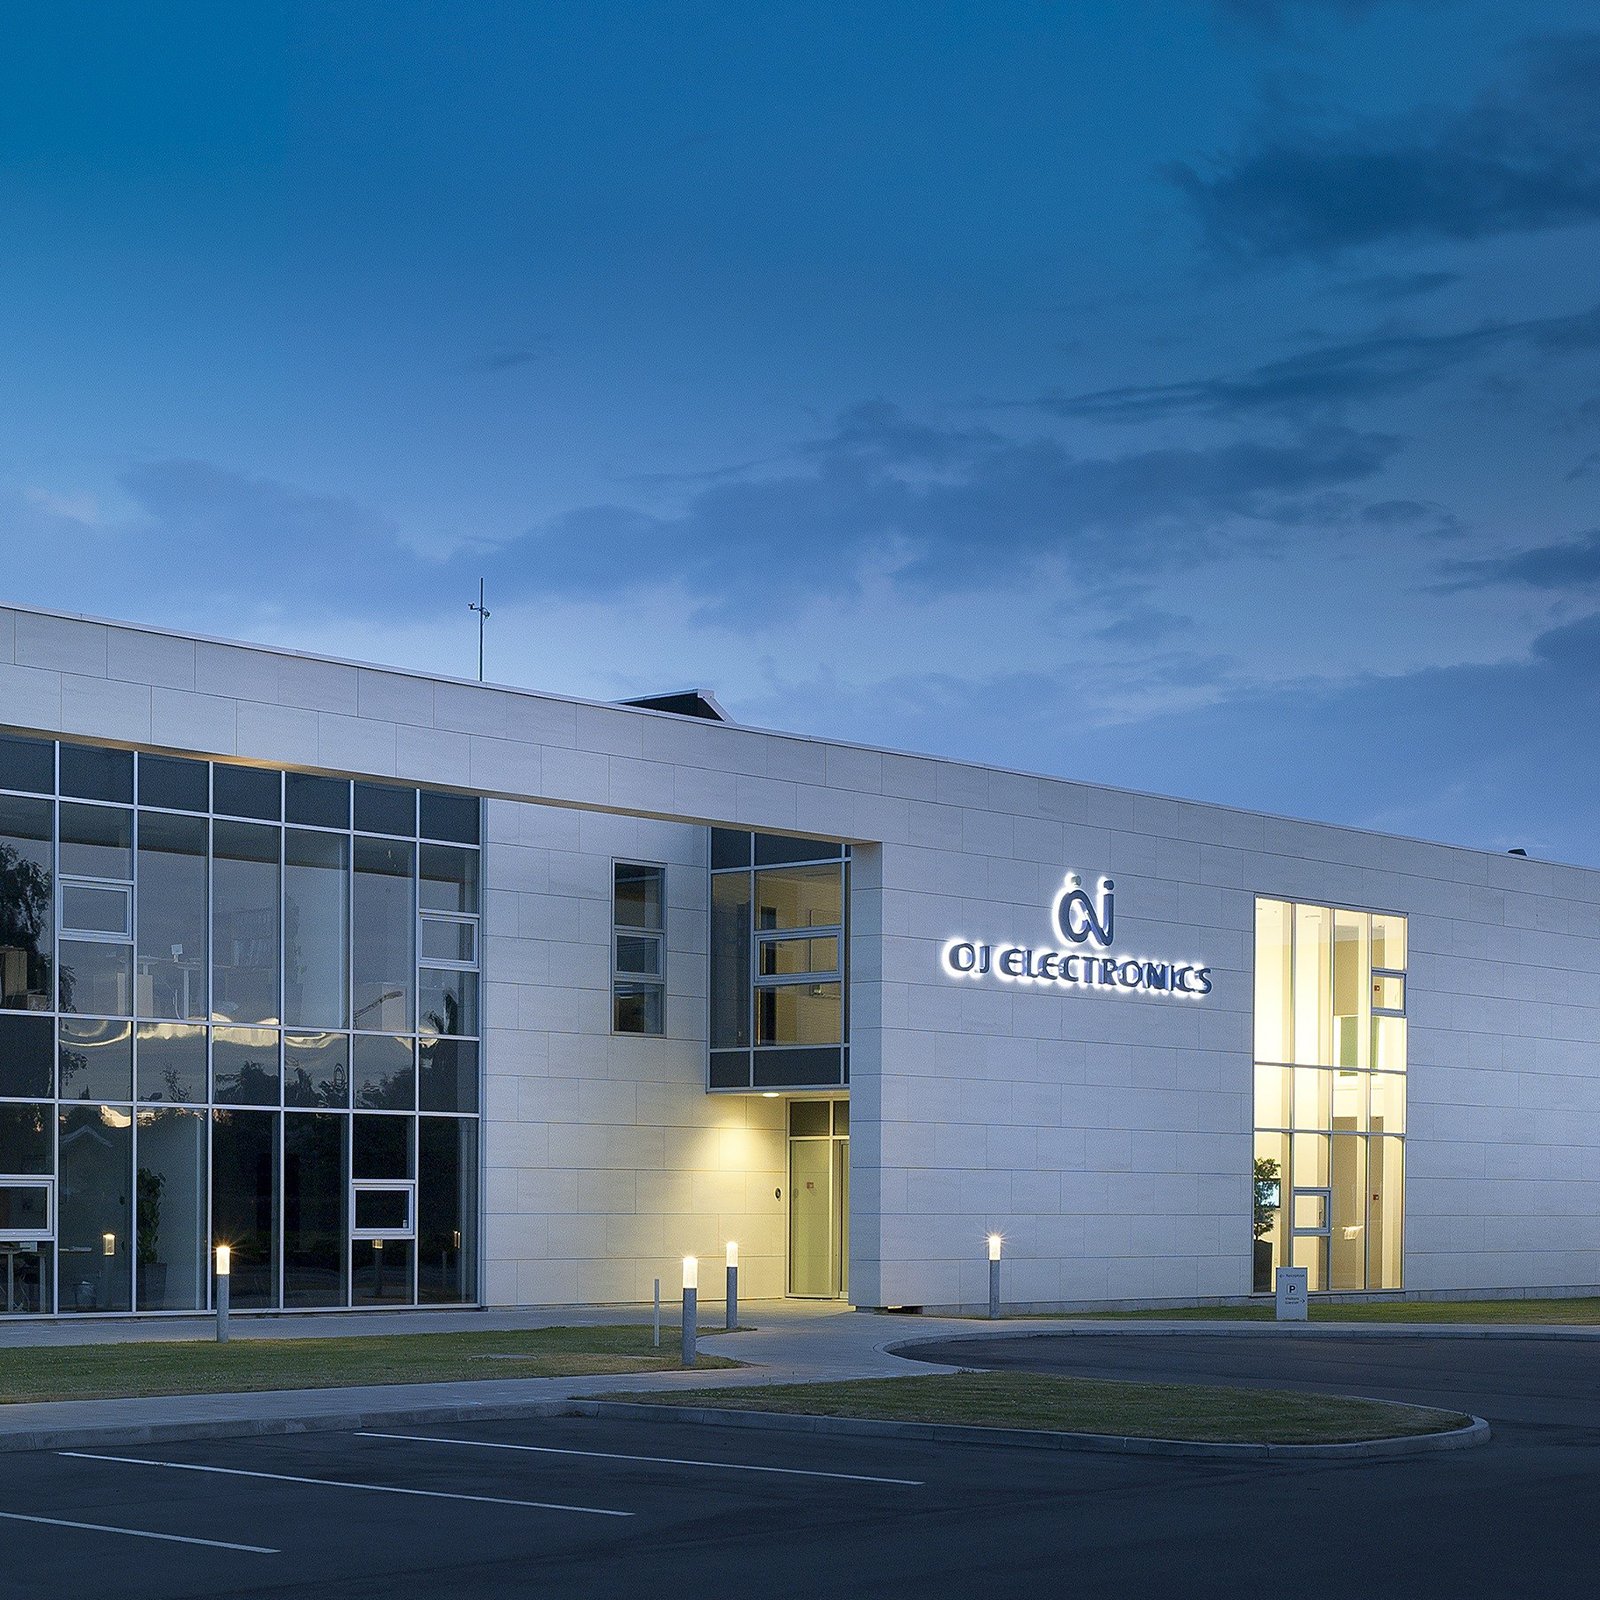 OJ Electronics company building in Sønderborg, Denmark